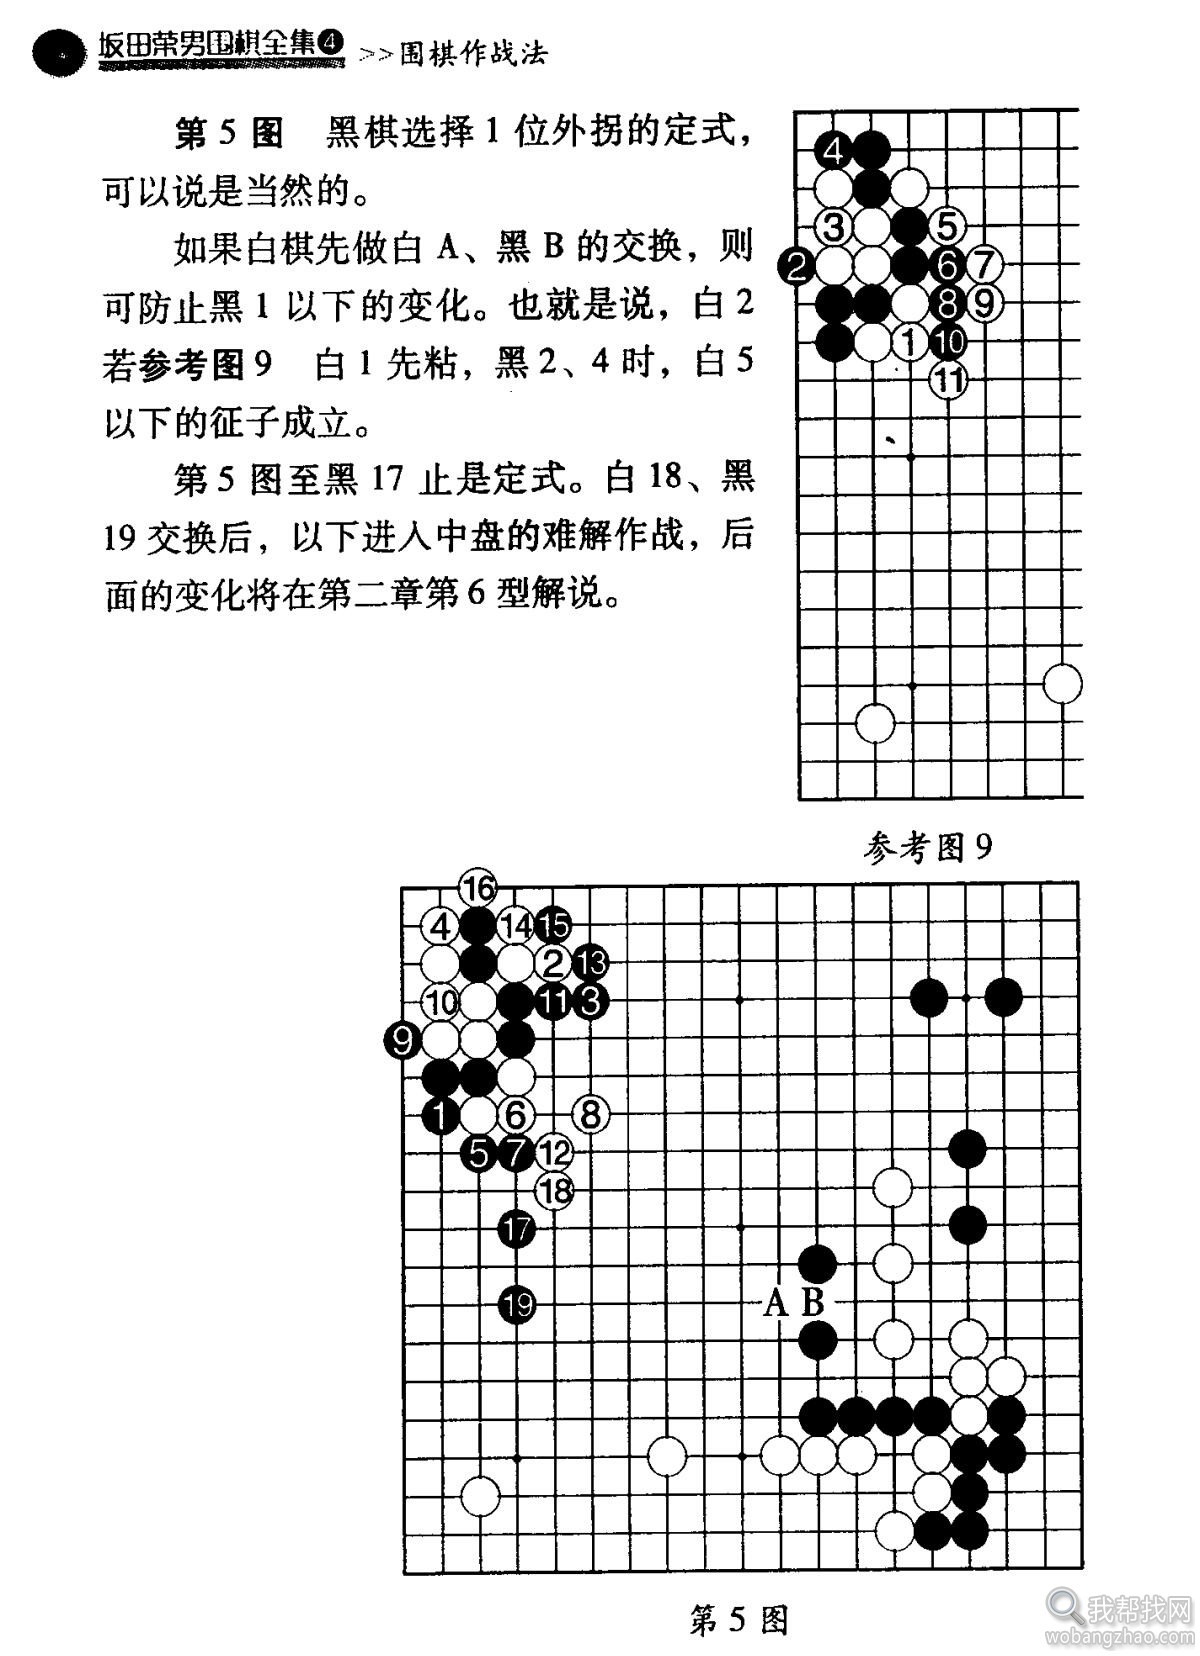 围棋战法 (11).jpg